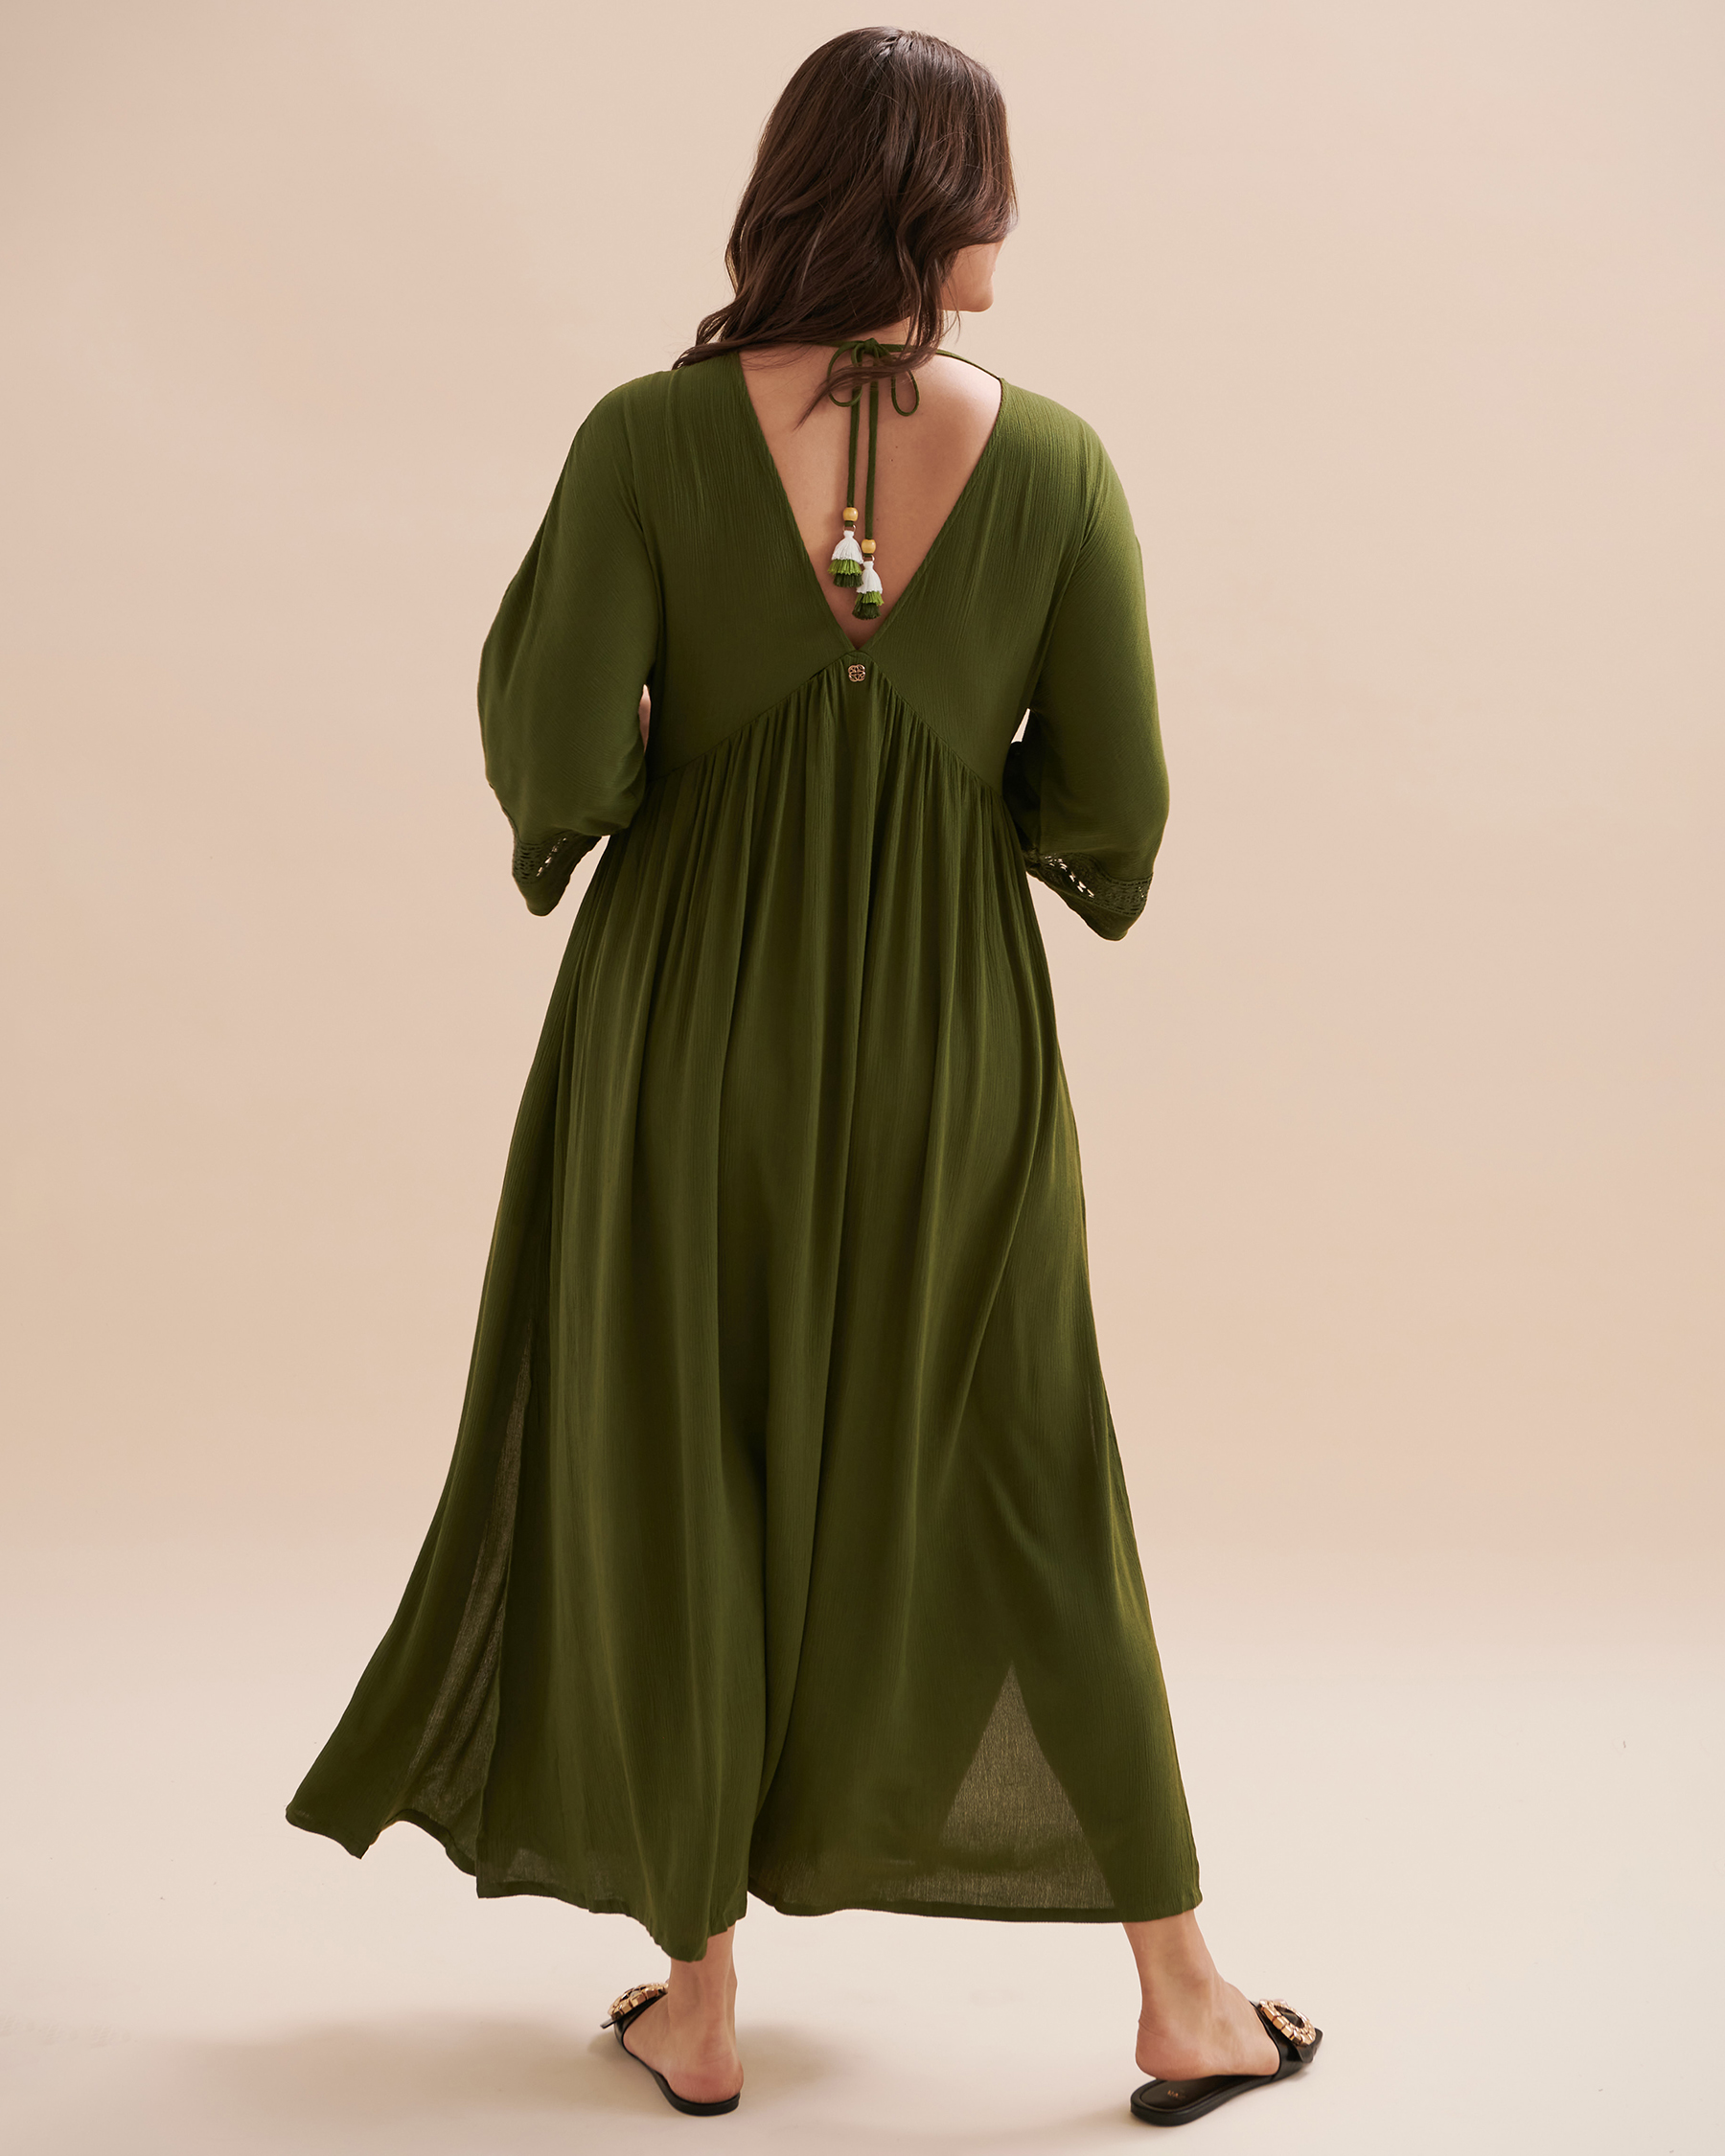 TURQUOISE COUTURE Robe maxi détail de crochet Olive 02300089 - Voir2